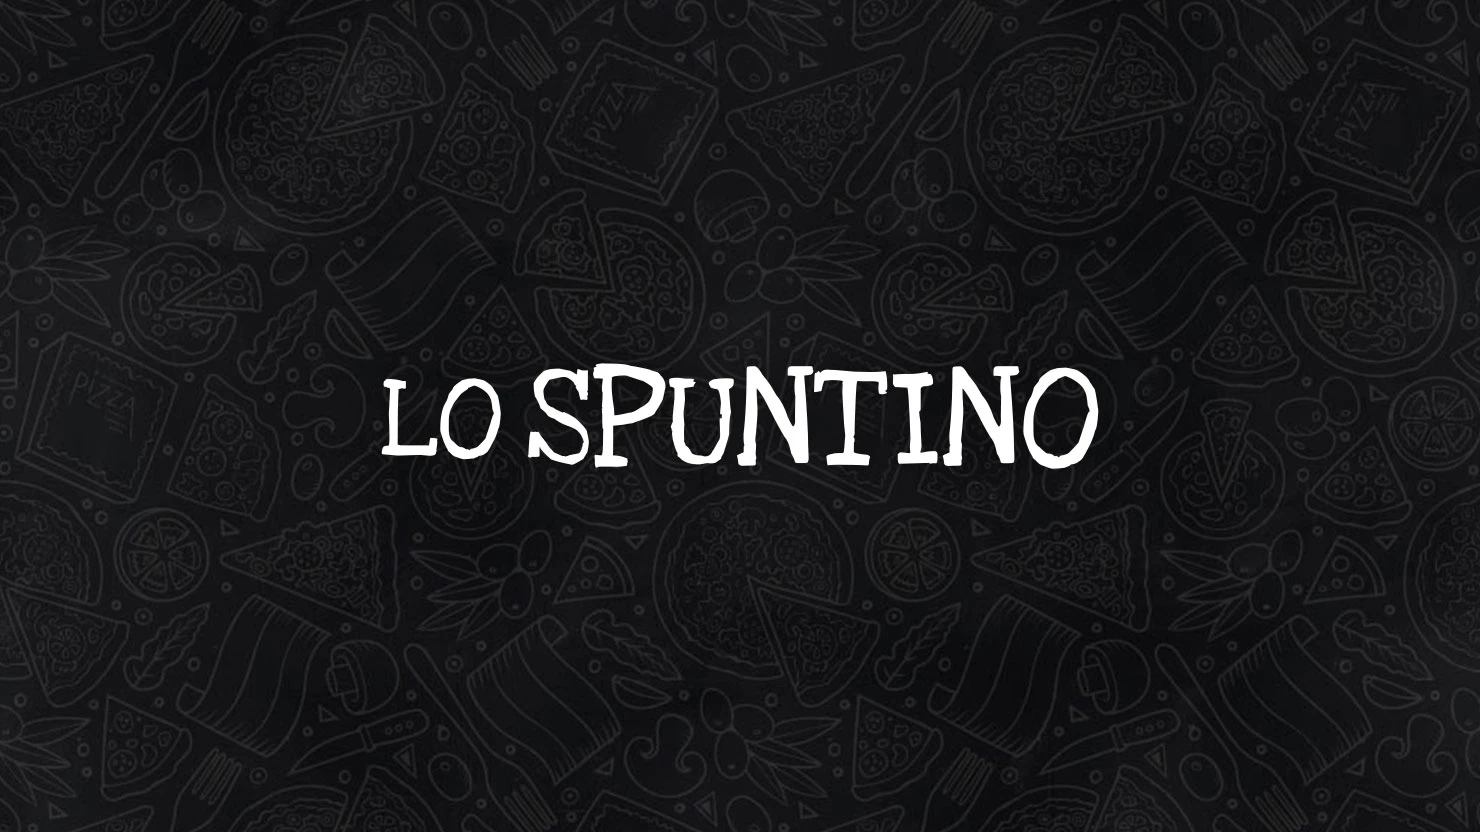 Lo Spuntino - Der Snack auf italienisch!